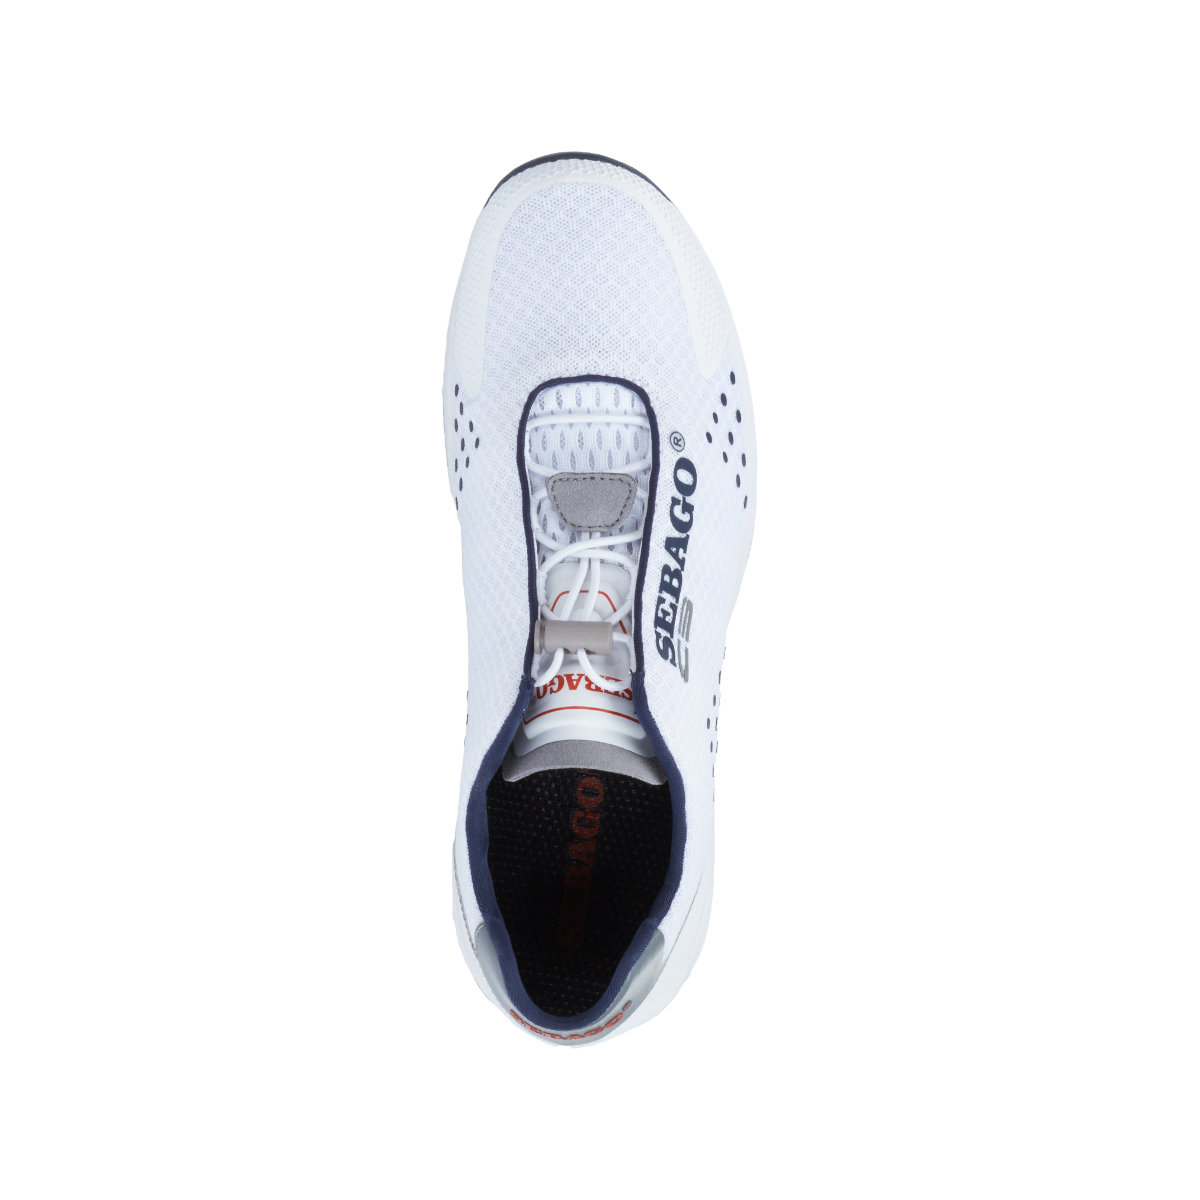 Sebago Cyphon Sea Sport chaussures à voile femme blanche, taille EU 39 (US 8,5)